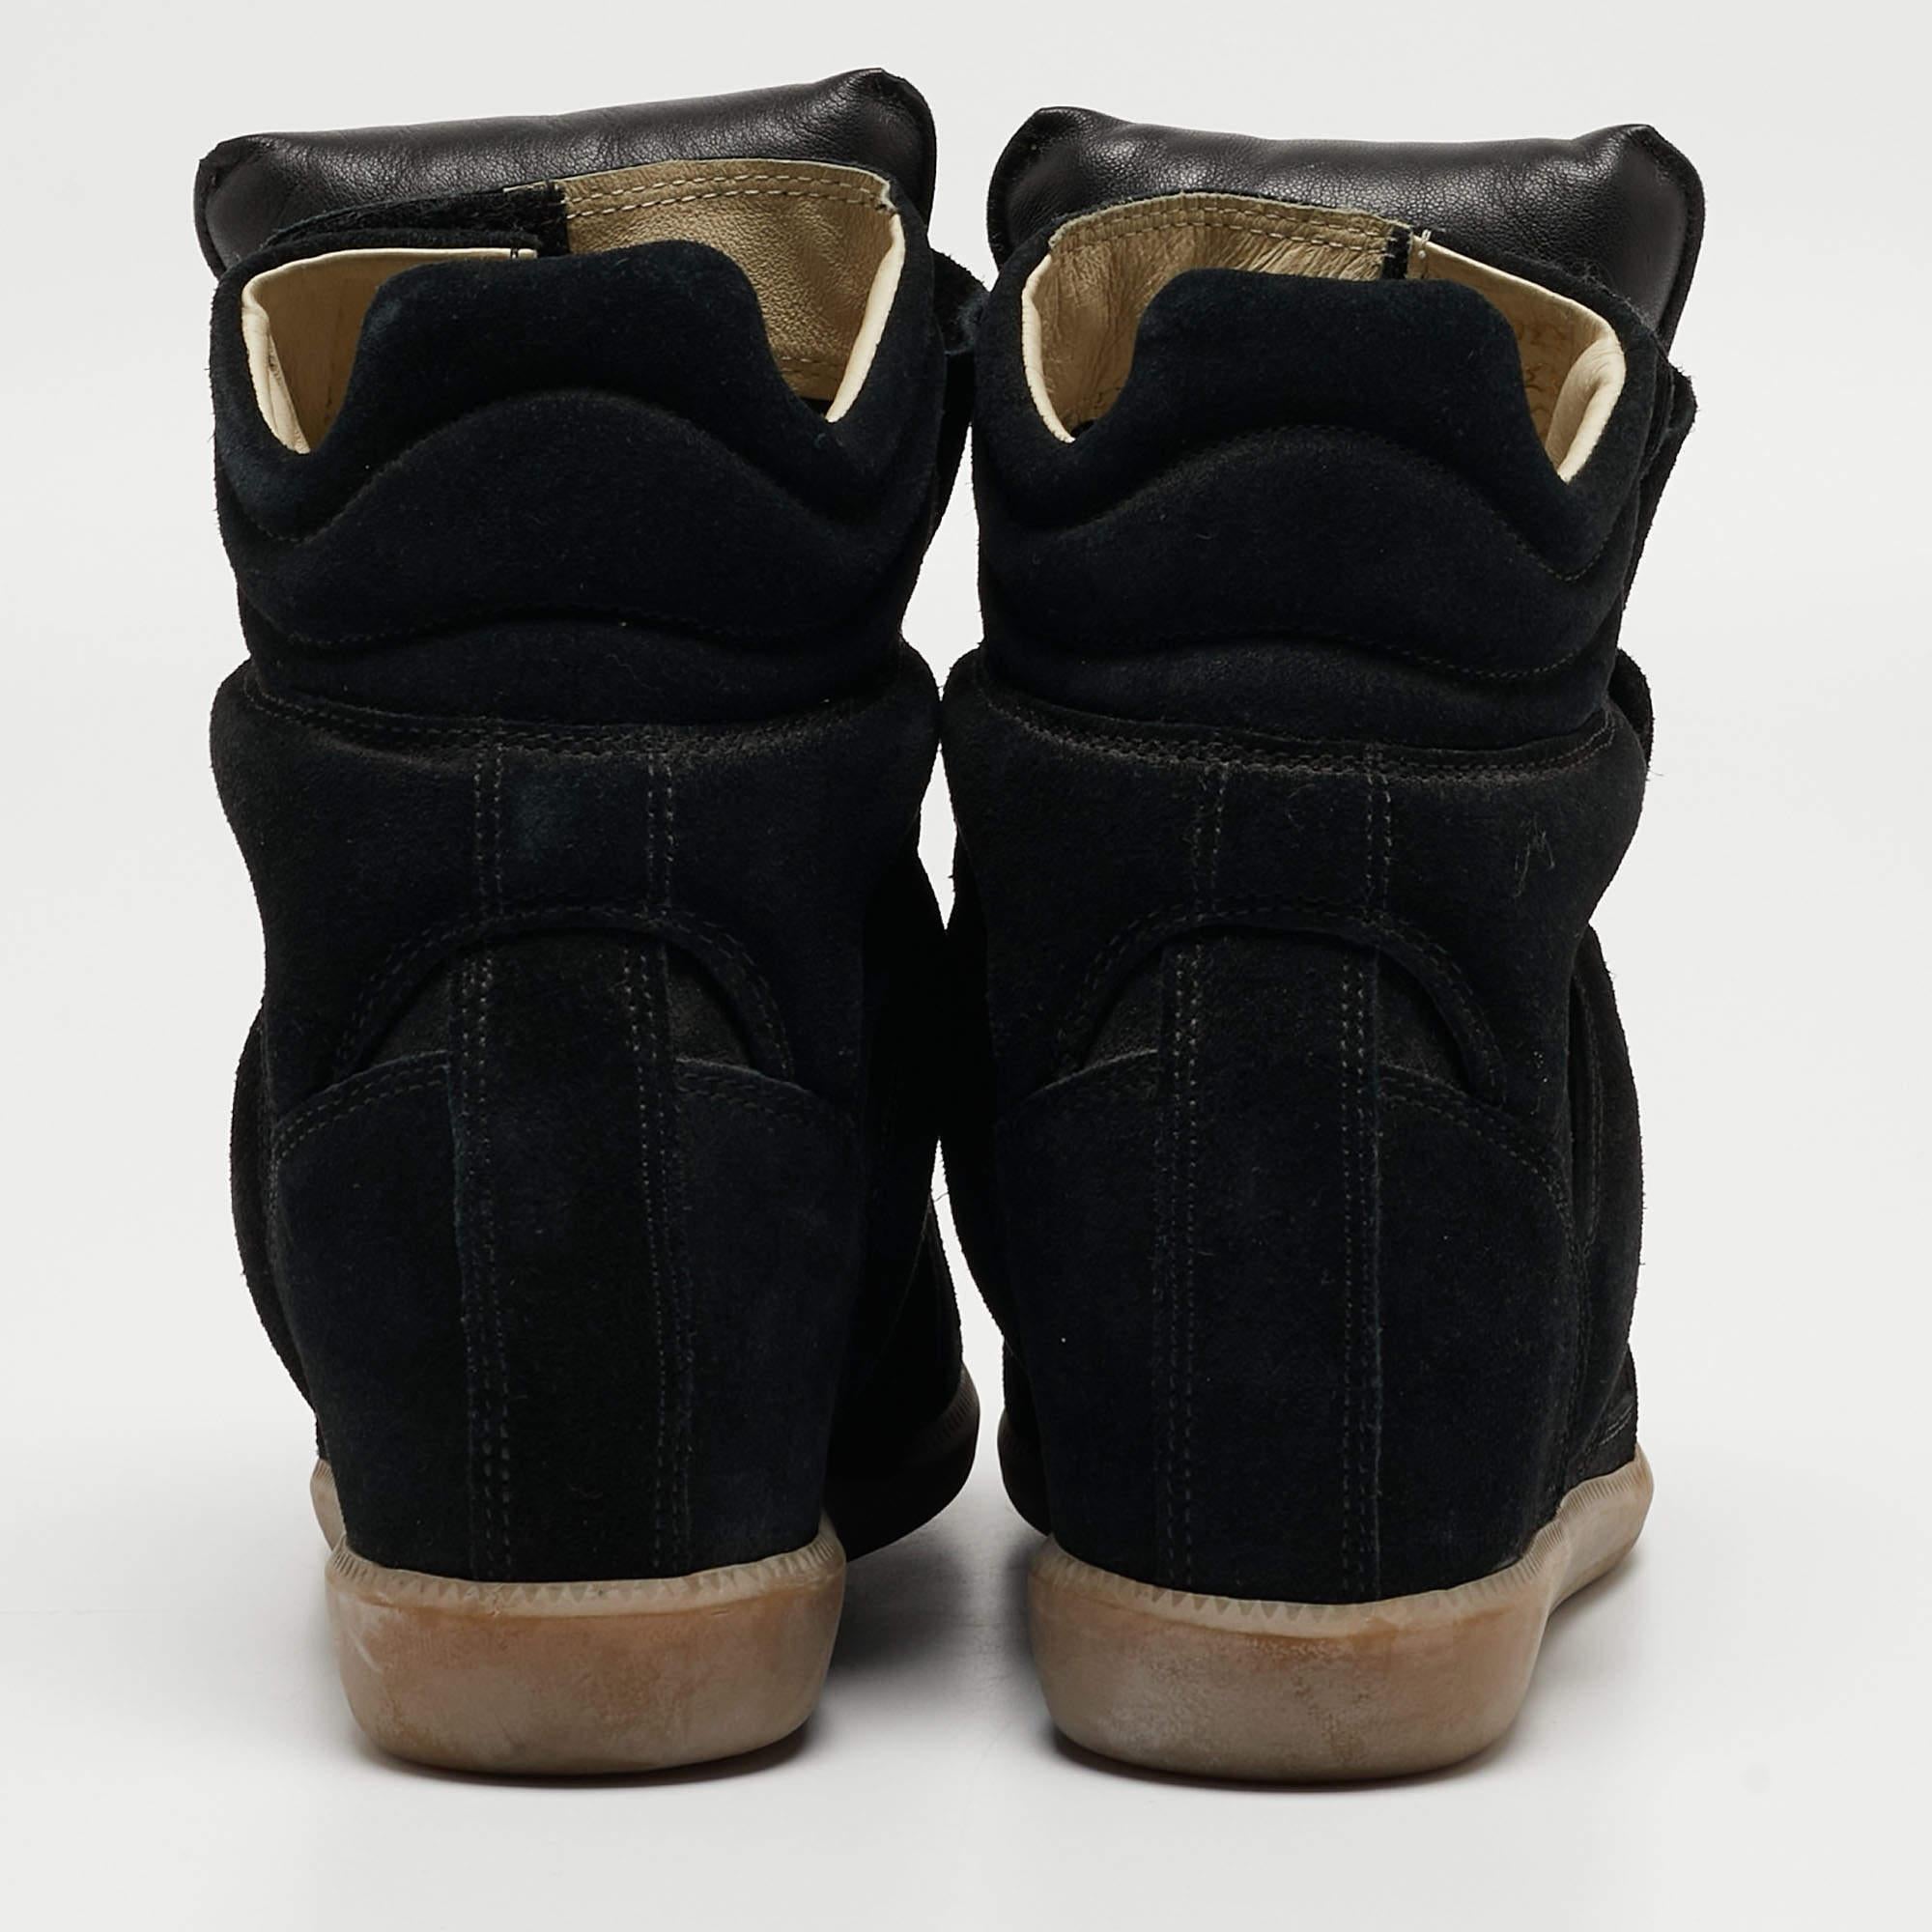 Gönnen Sie sich luxuriösen Komfort mit diesen Designer-Sneakers aus dem Hause Isabel Marant. Mit Klettverschlussriemen und verstecktem Keilabsatz verleihen sie Ihren Outfits ein stilvolles Finish.

